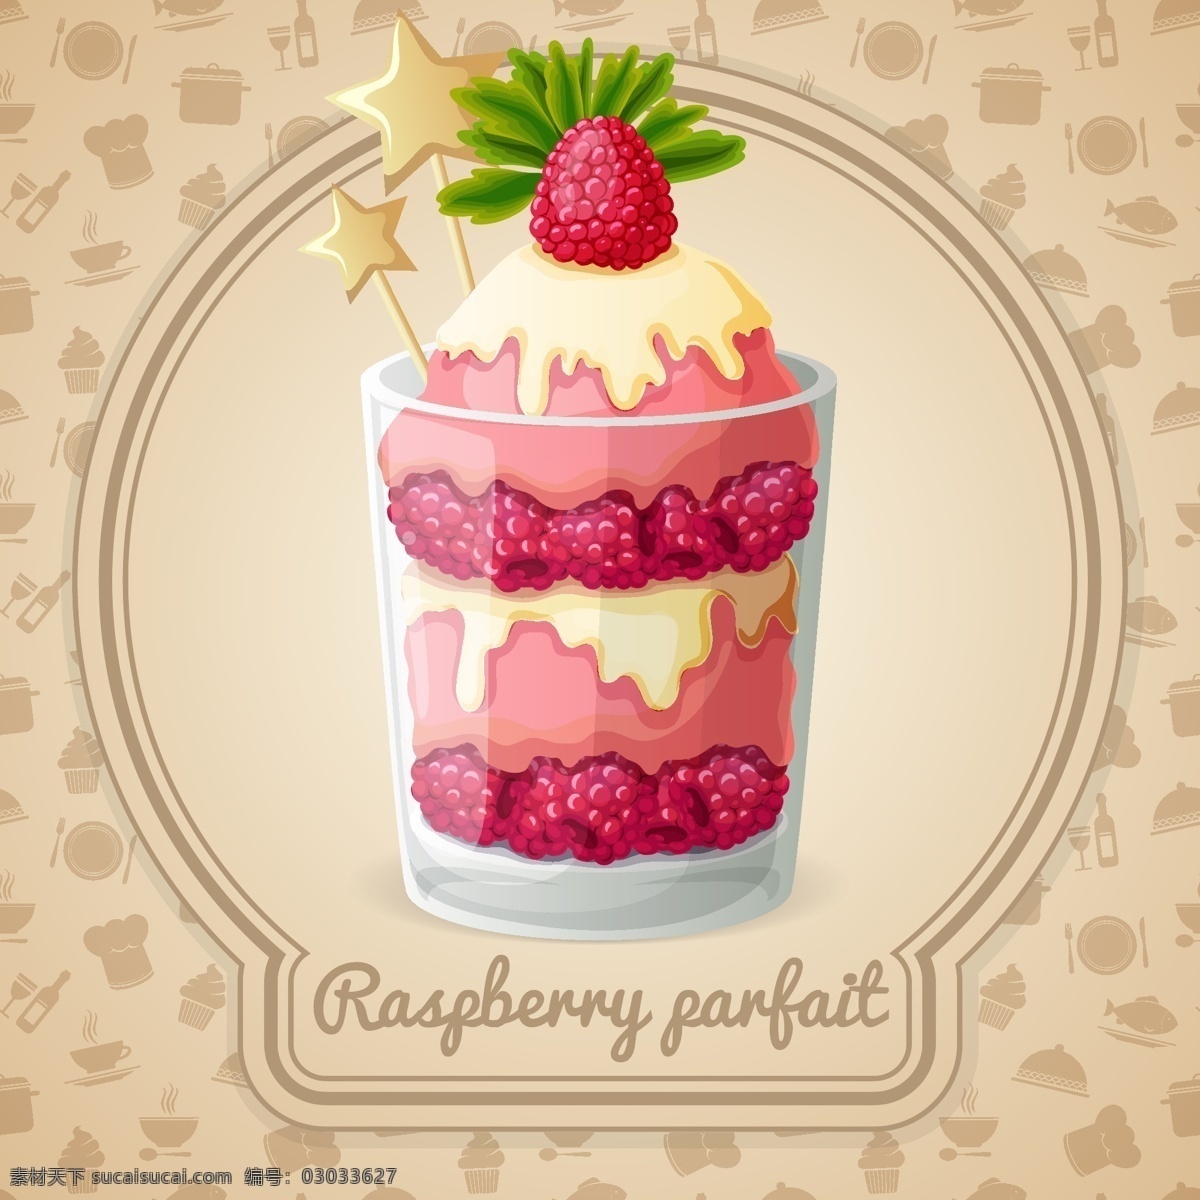 草莓冰激凌 草莓酱 草莓果酱 草莓 冷饮 甜点 餐饮美食 生活百科 矢量